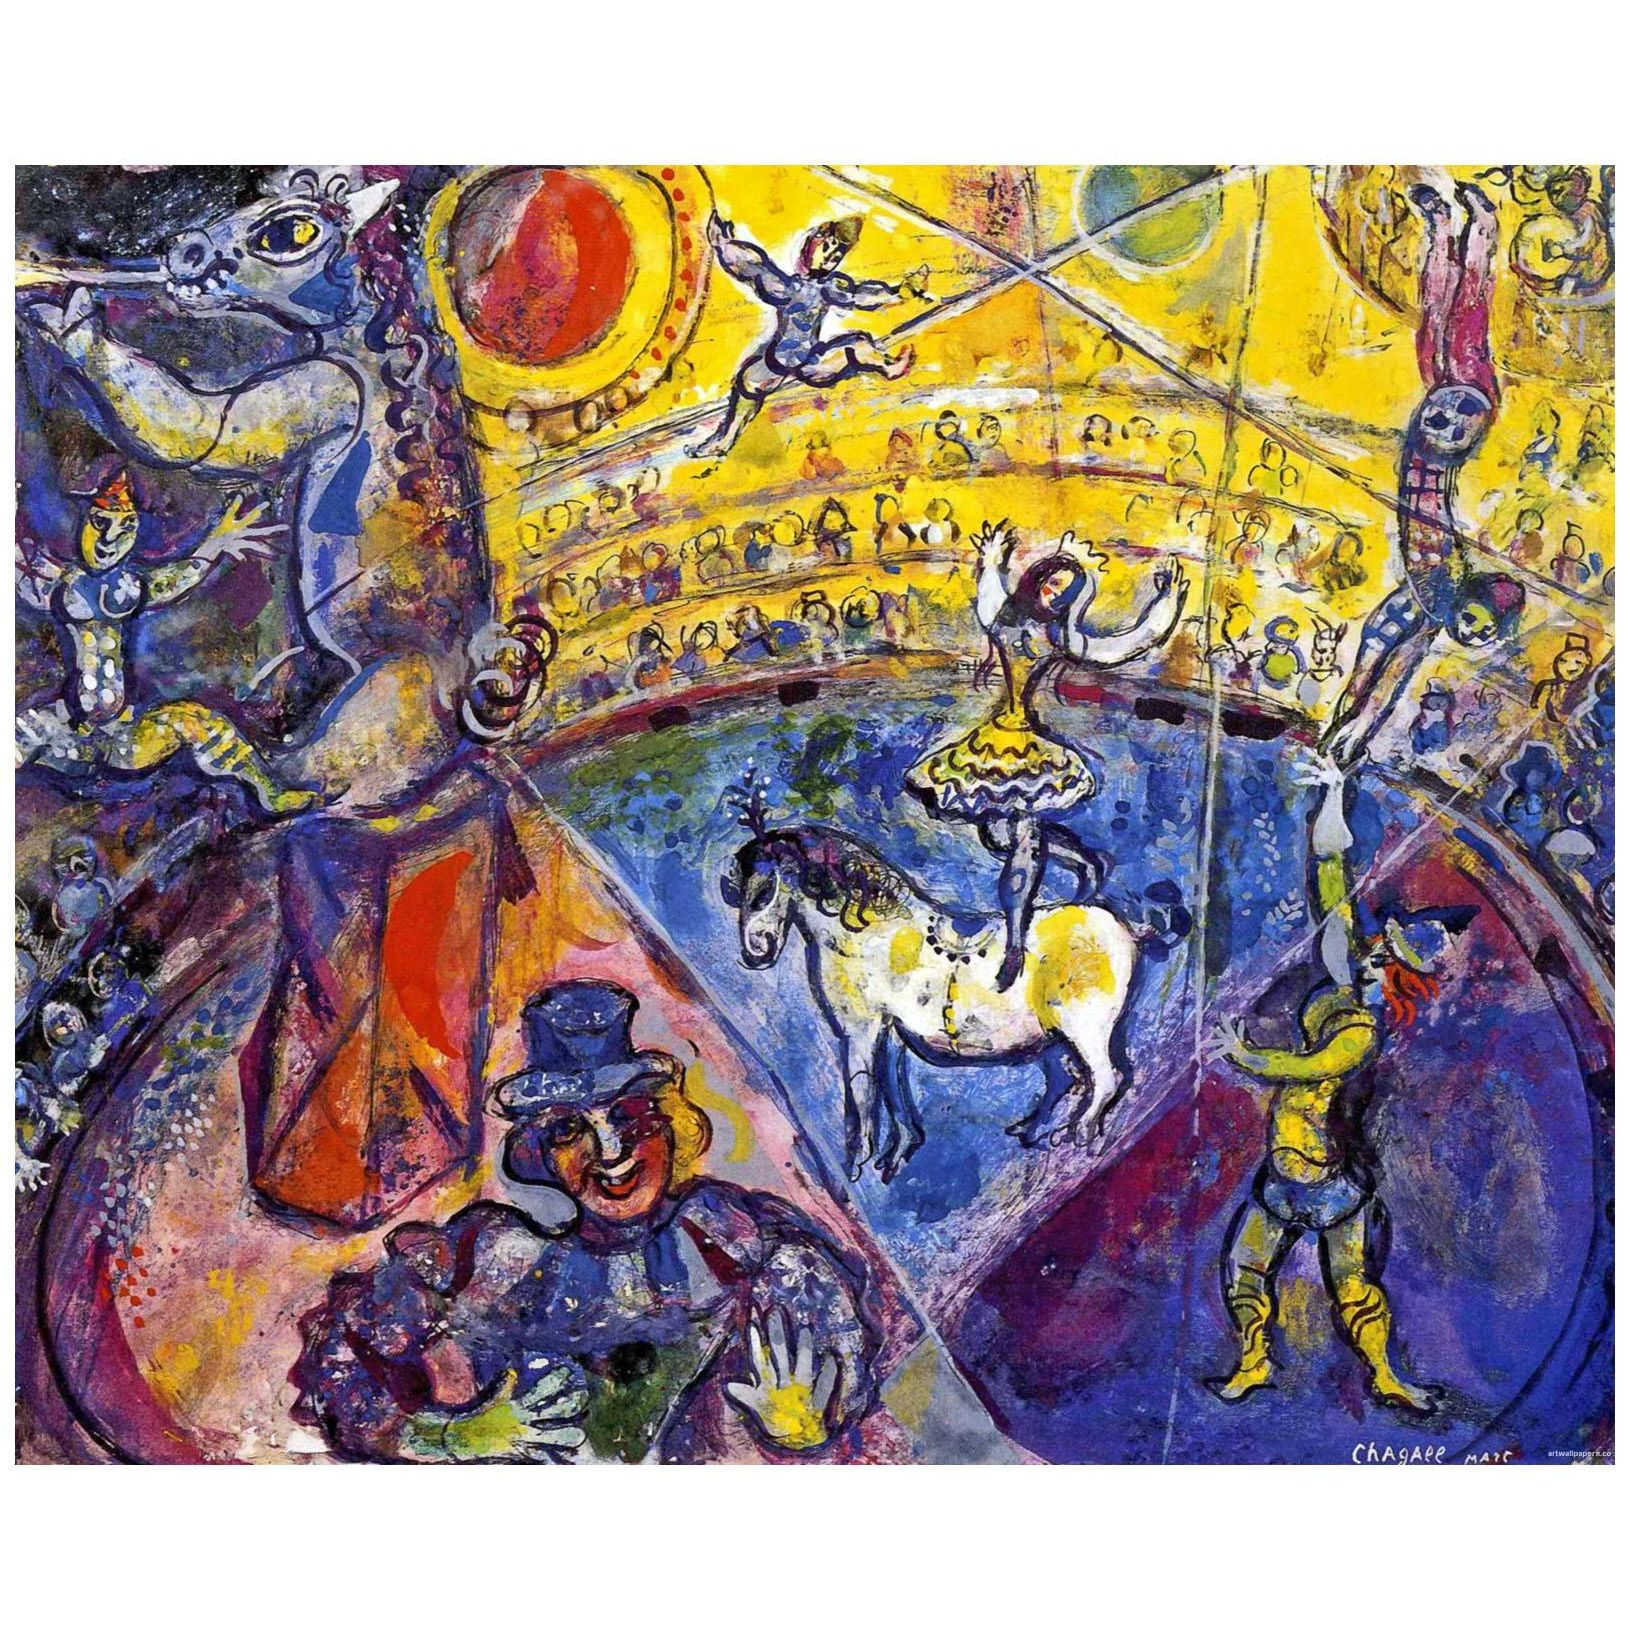 Марк Шагал. Цирковая лошадь. 1964. Музей иудаистского искусства, Нью-Йорк